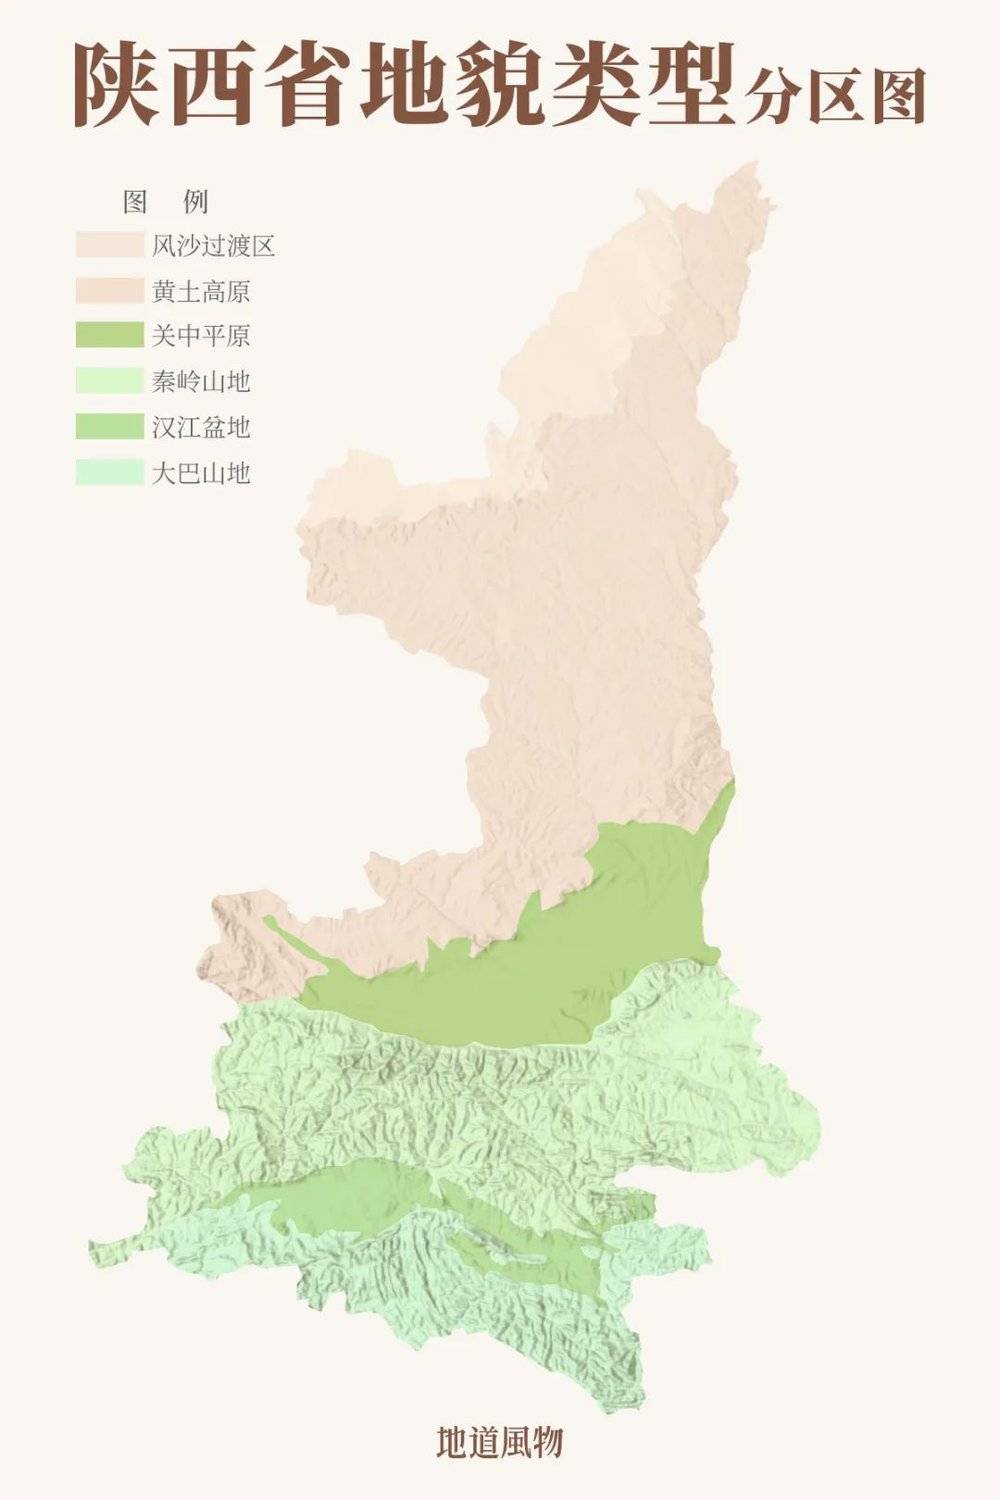 陕西省地貌类型分区图，南北差异巨大。制图/孙璐